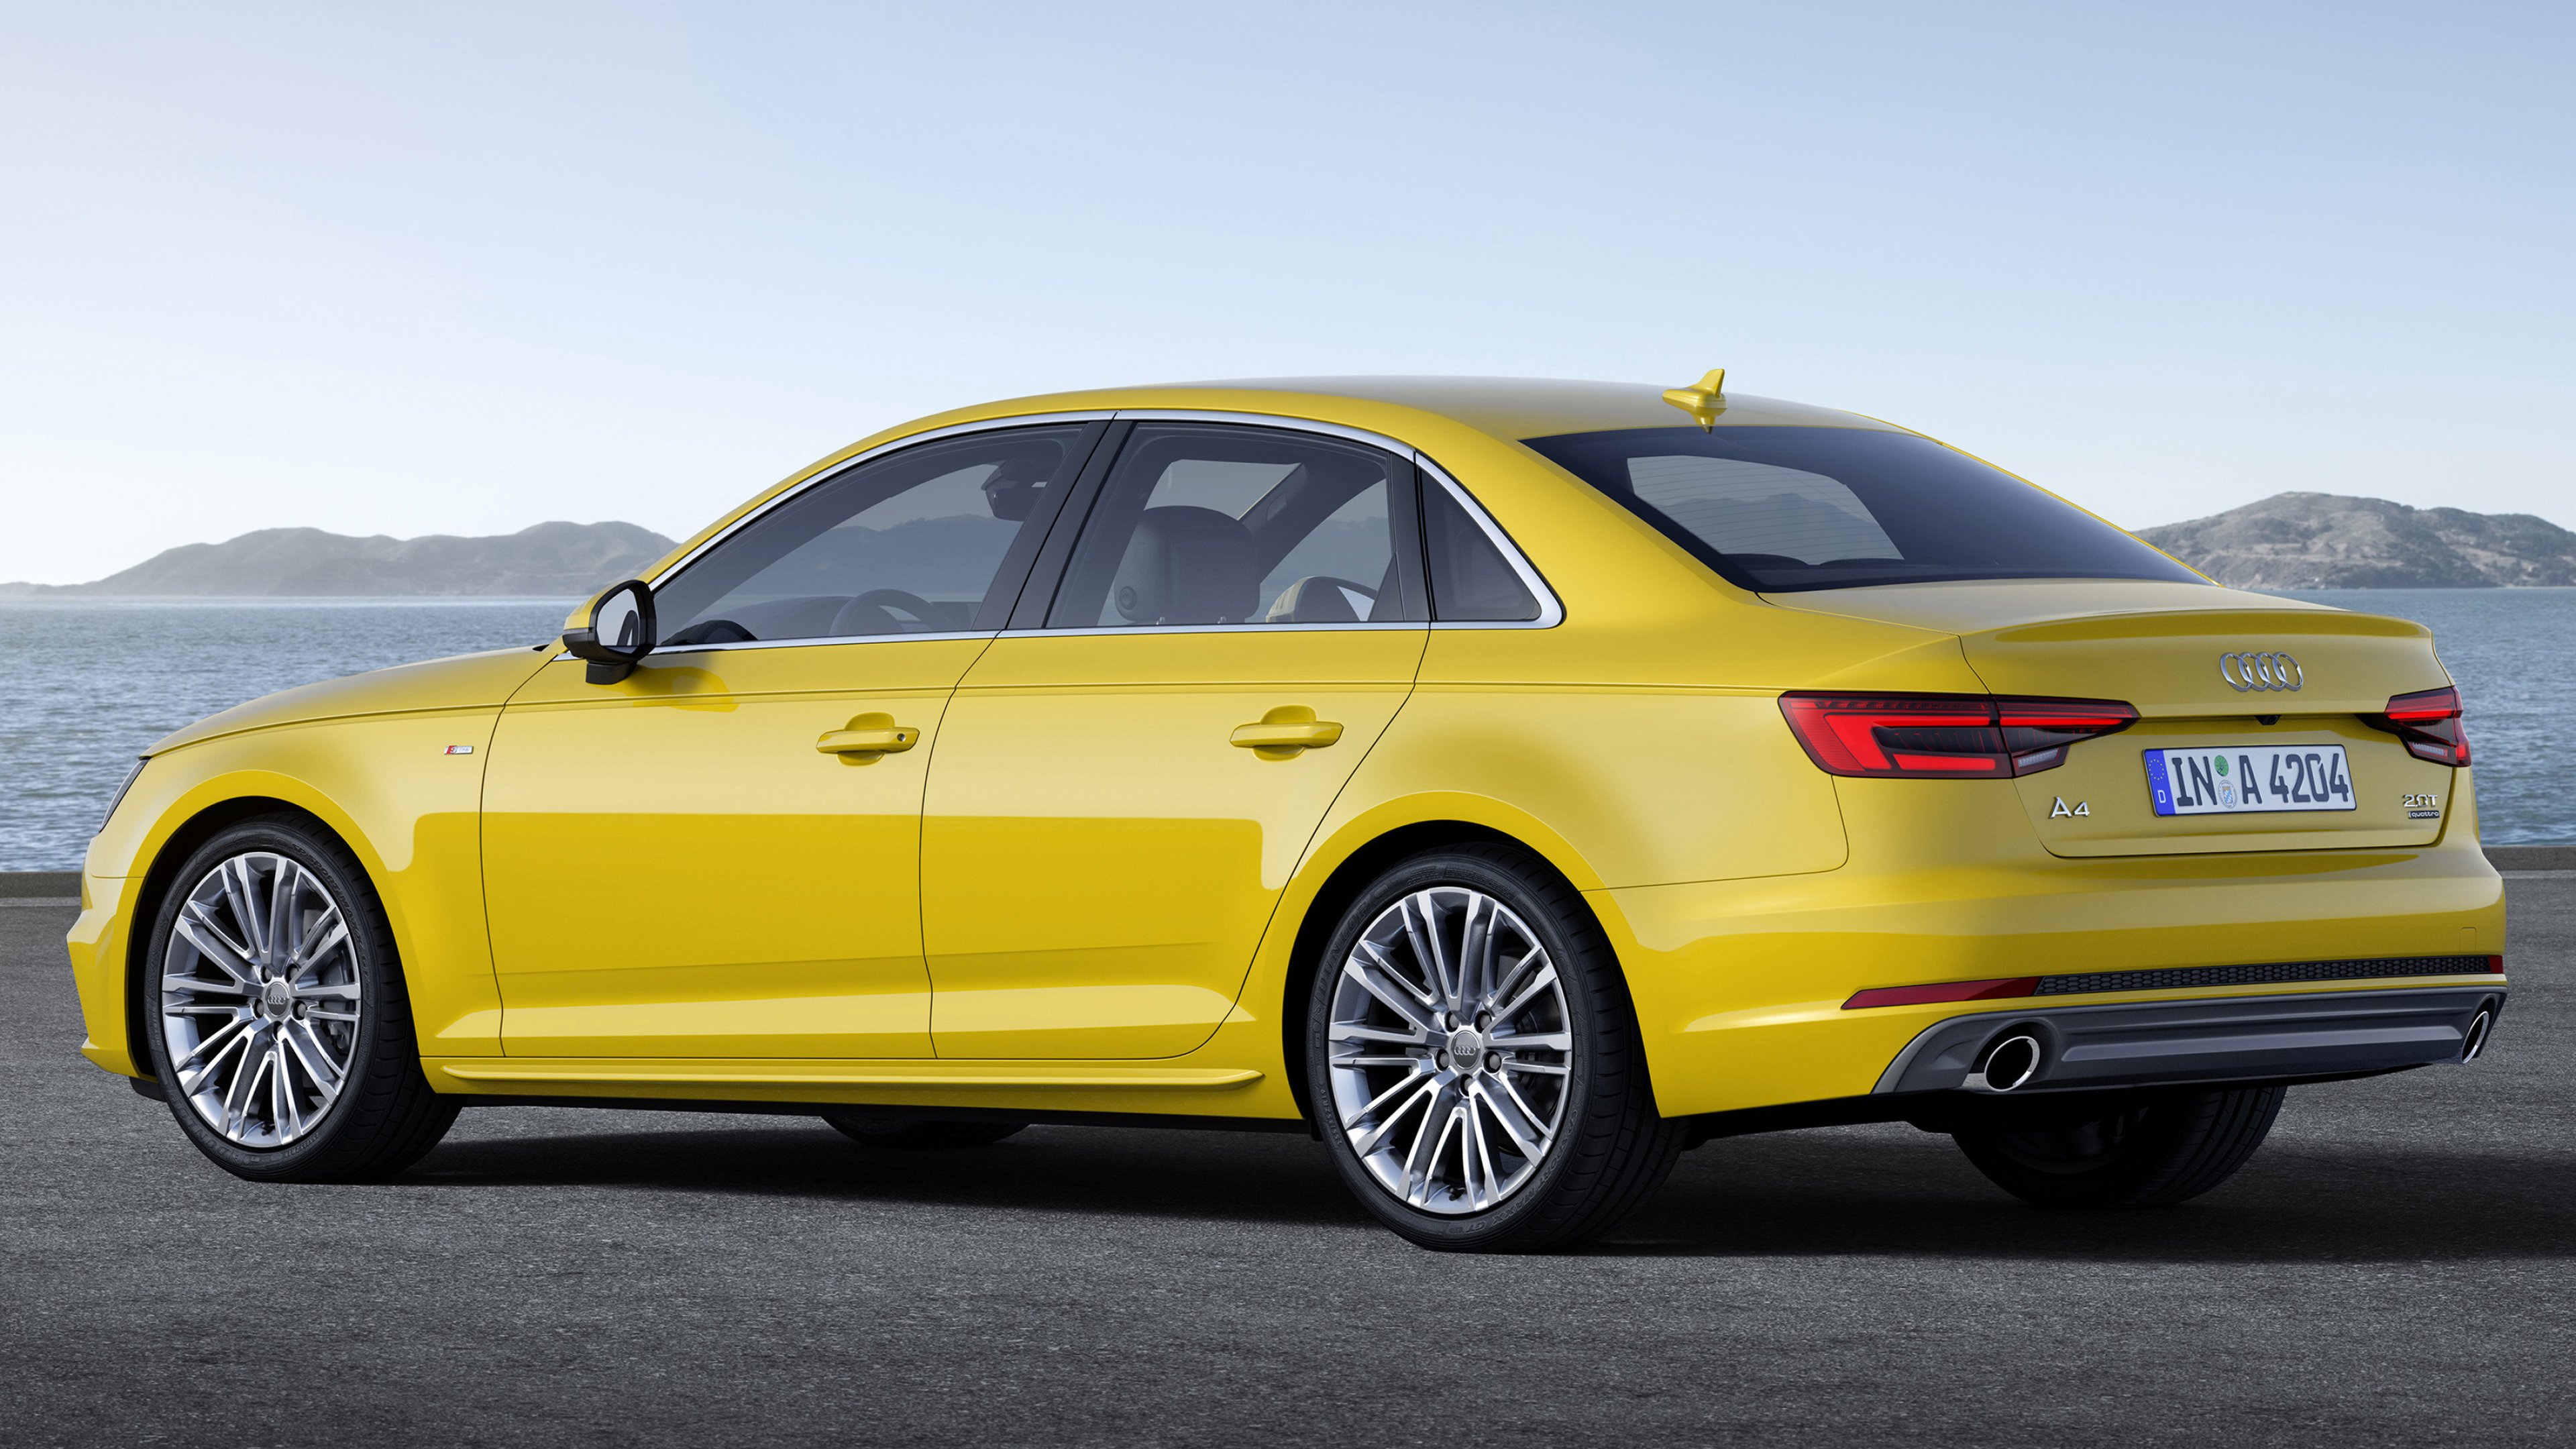 Audi A4, Luxury car, Cars desktop wallpapers, 4K Ultra HD, 3840x2160 4K Desktop